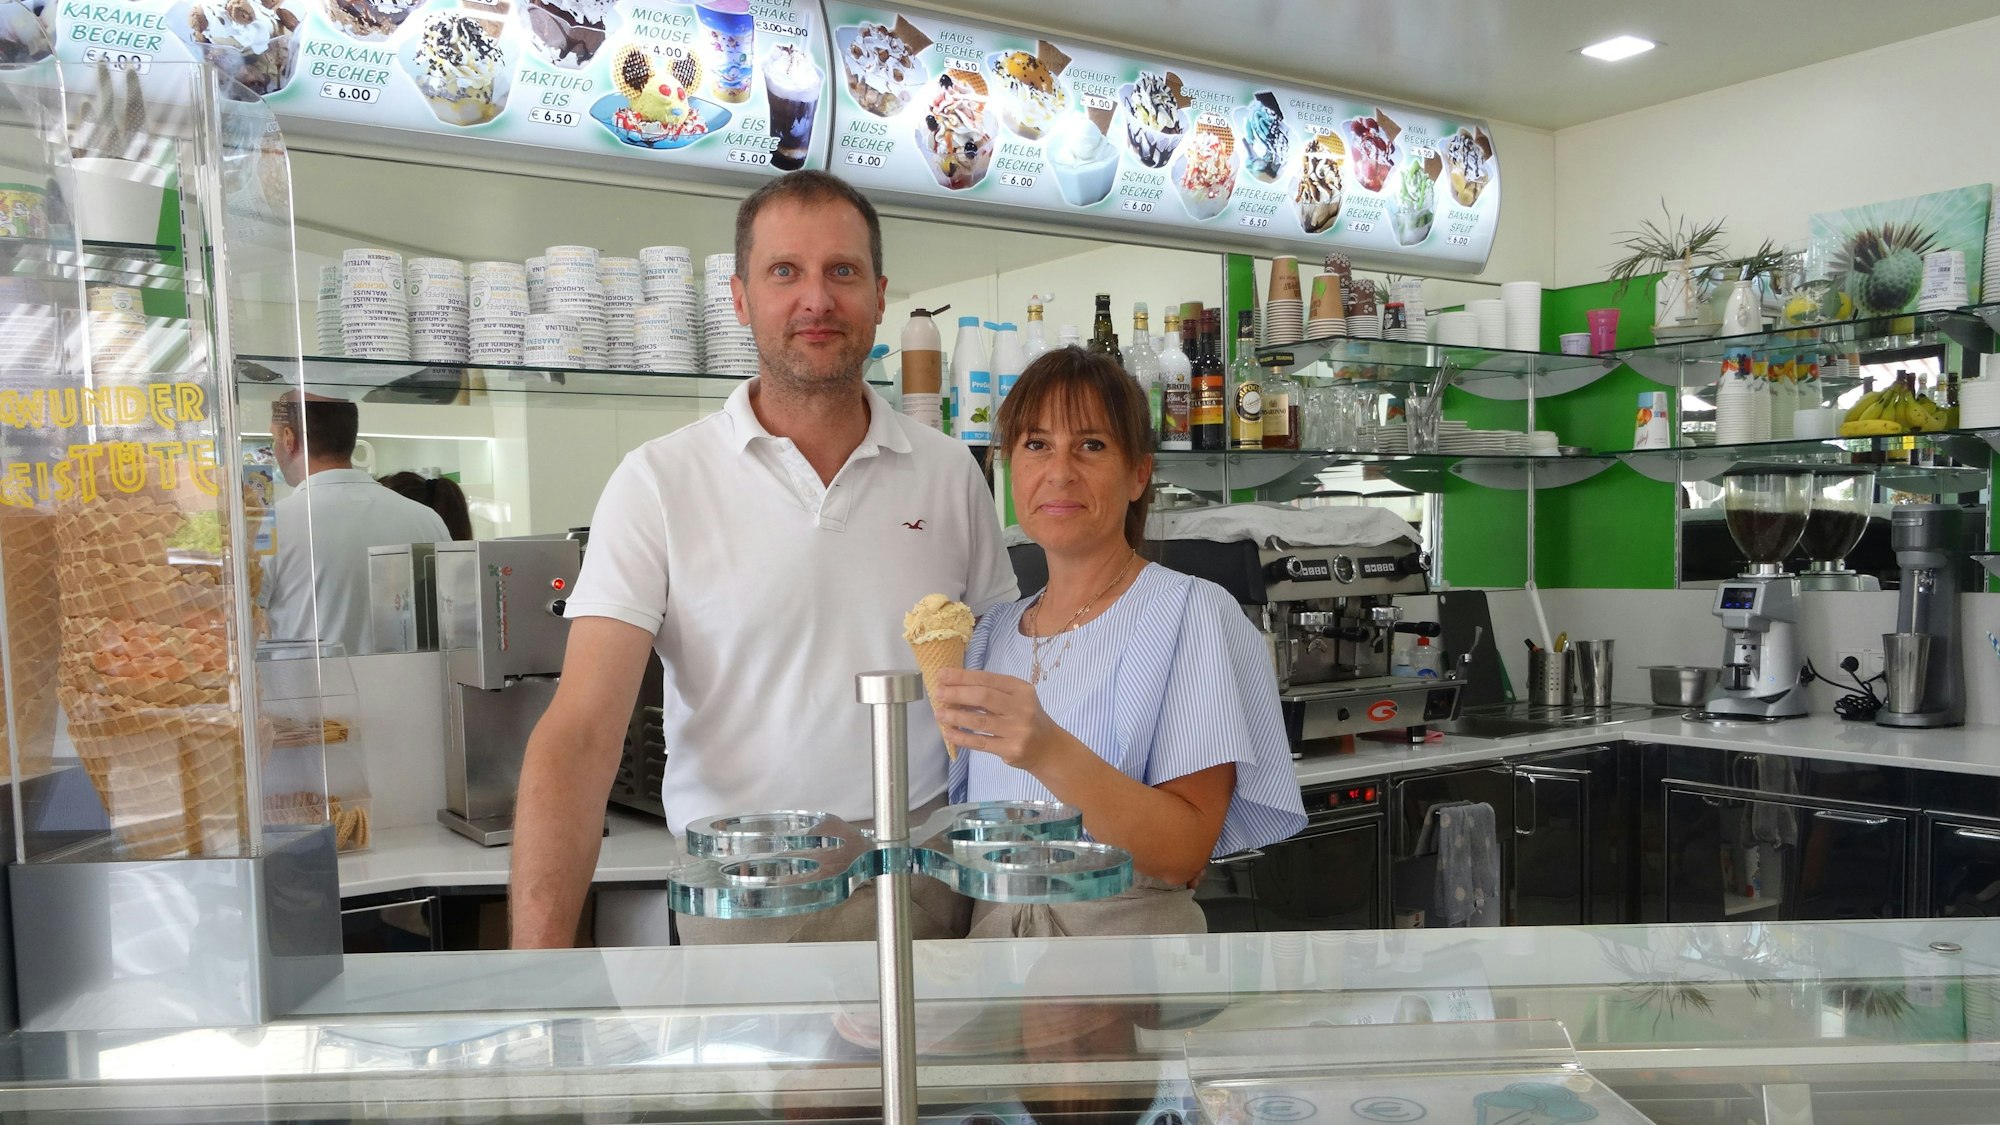 Francesco Provvedi und Sonia Becchetti führen das Eiscafé Panciera in Neunkirchen-Seelscheid. Auf dem Bild stehen sie hinter der Eistheke und schauen in Richtung der Kamera.